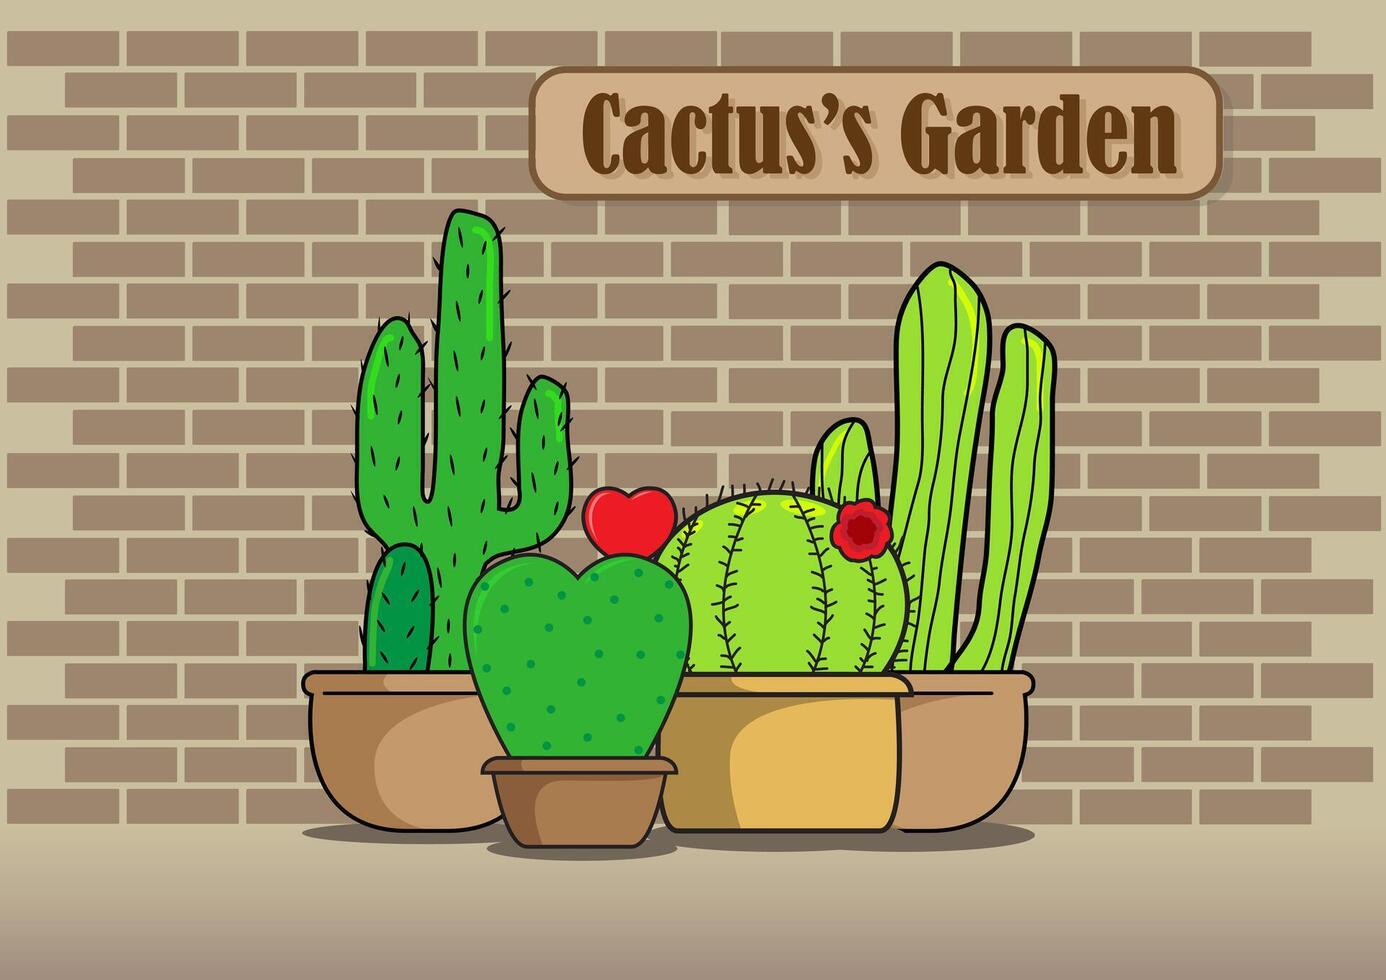 grupp av kaktus och kaktusar trädgård lydelse på brun märka främre av tegel vägg bakgrund. vektor